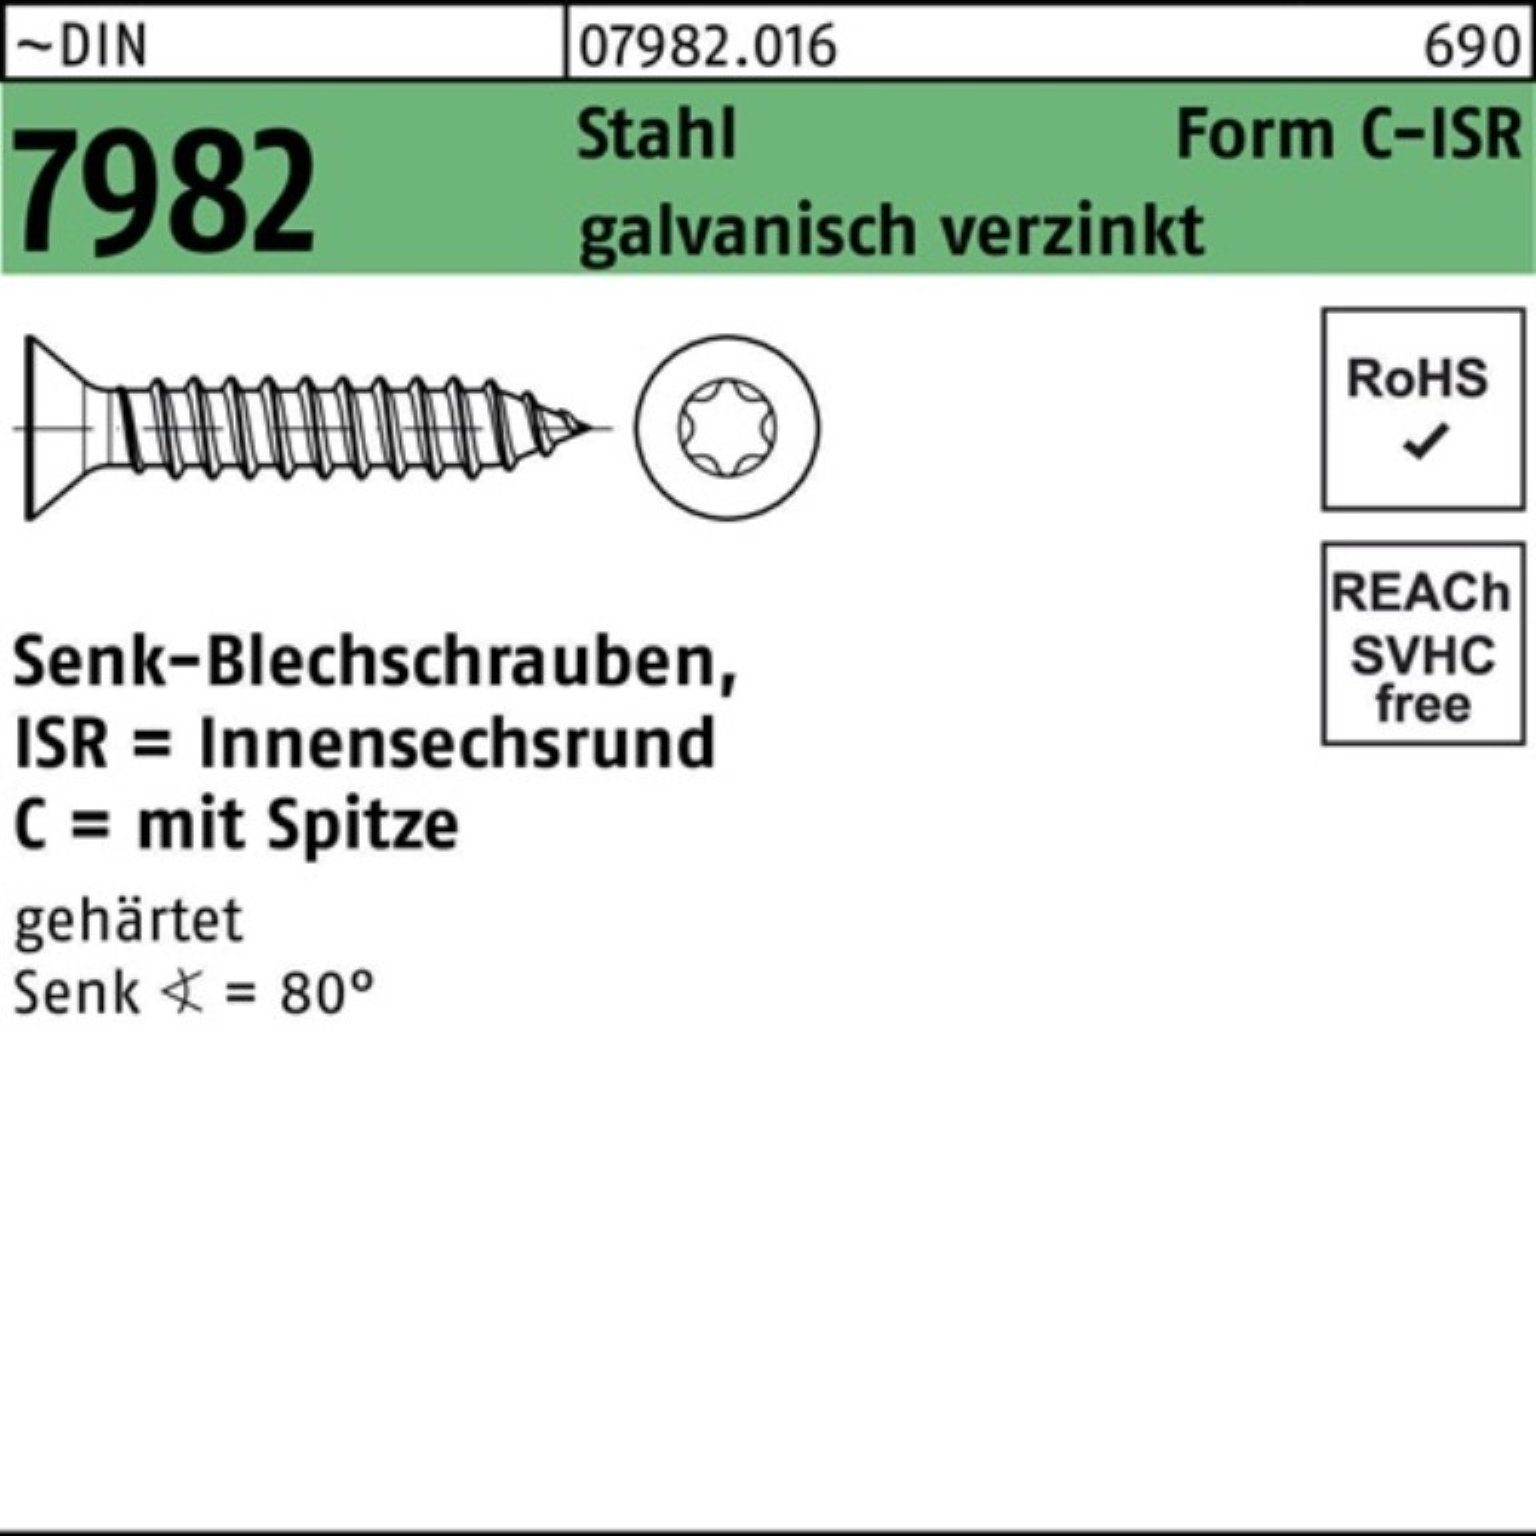 -C-T25 7982 Stahl Reyher ISR/Spitze Schraube DIN g Senkblechschraube Pack 250er 4,8x45